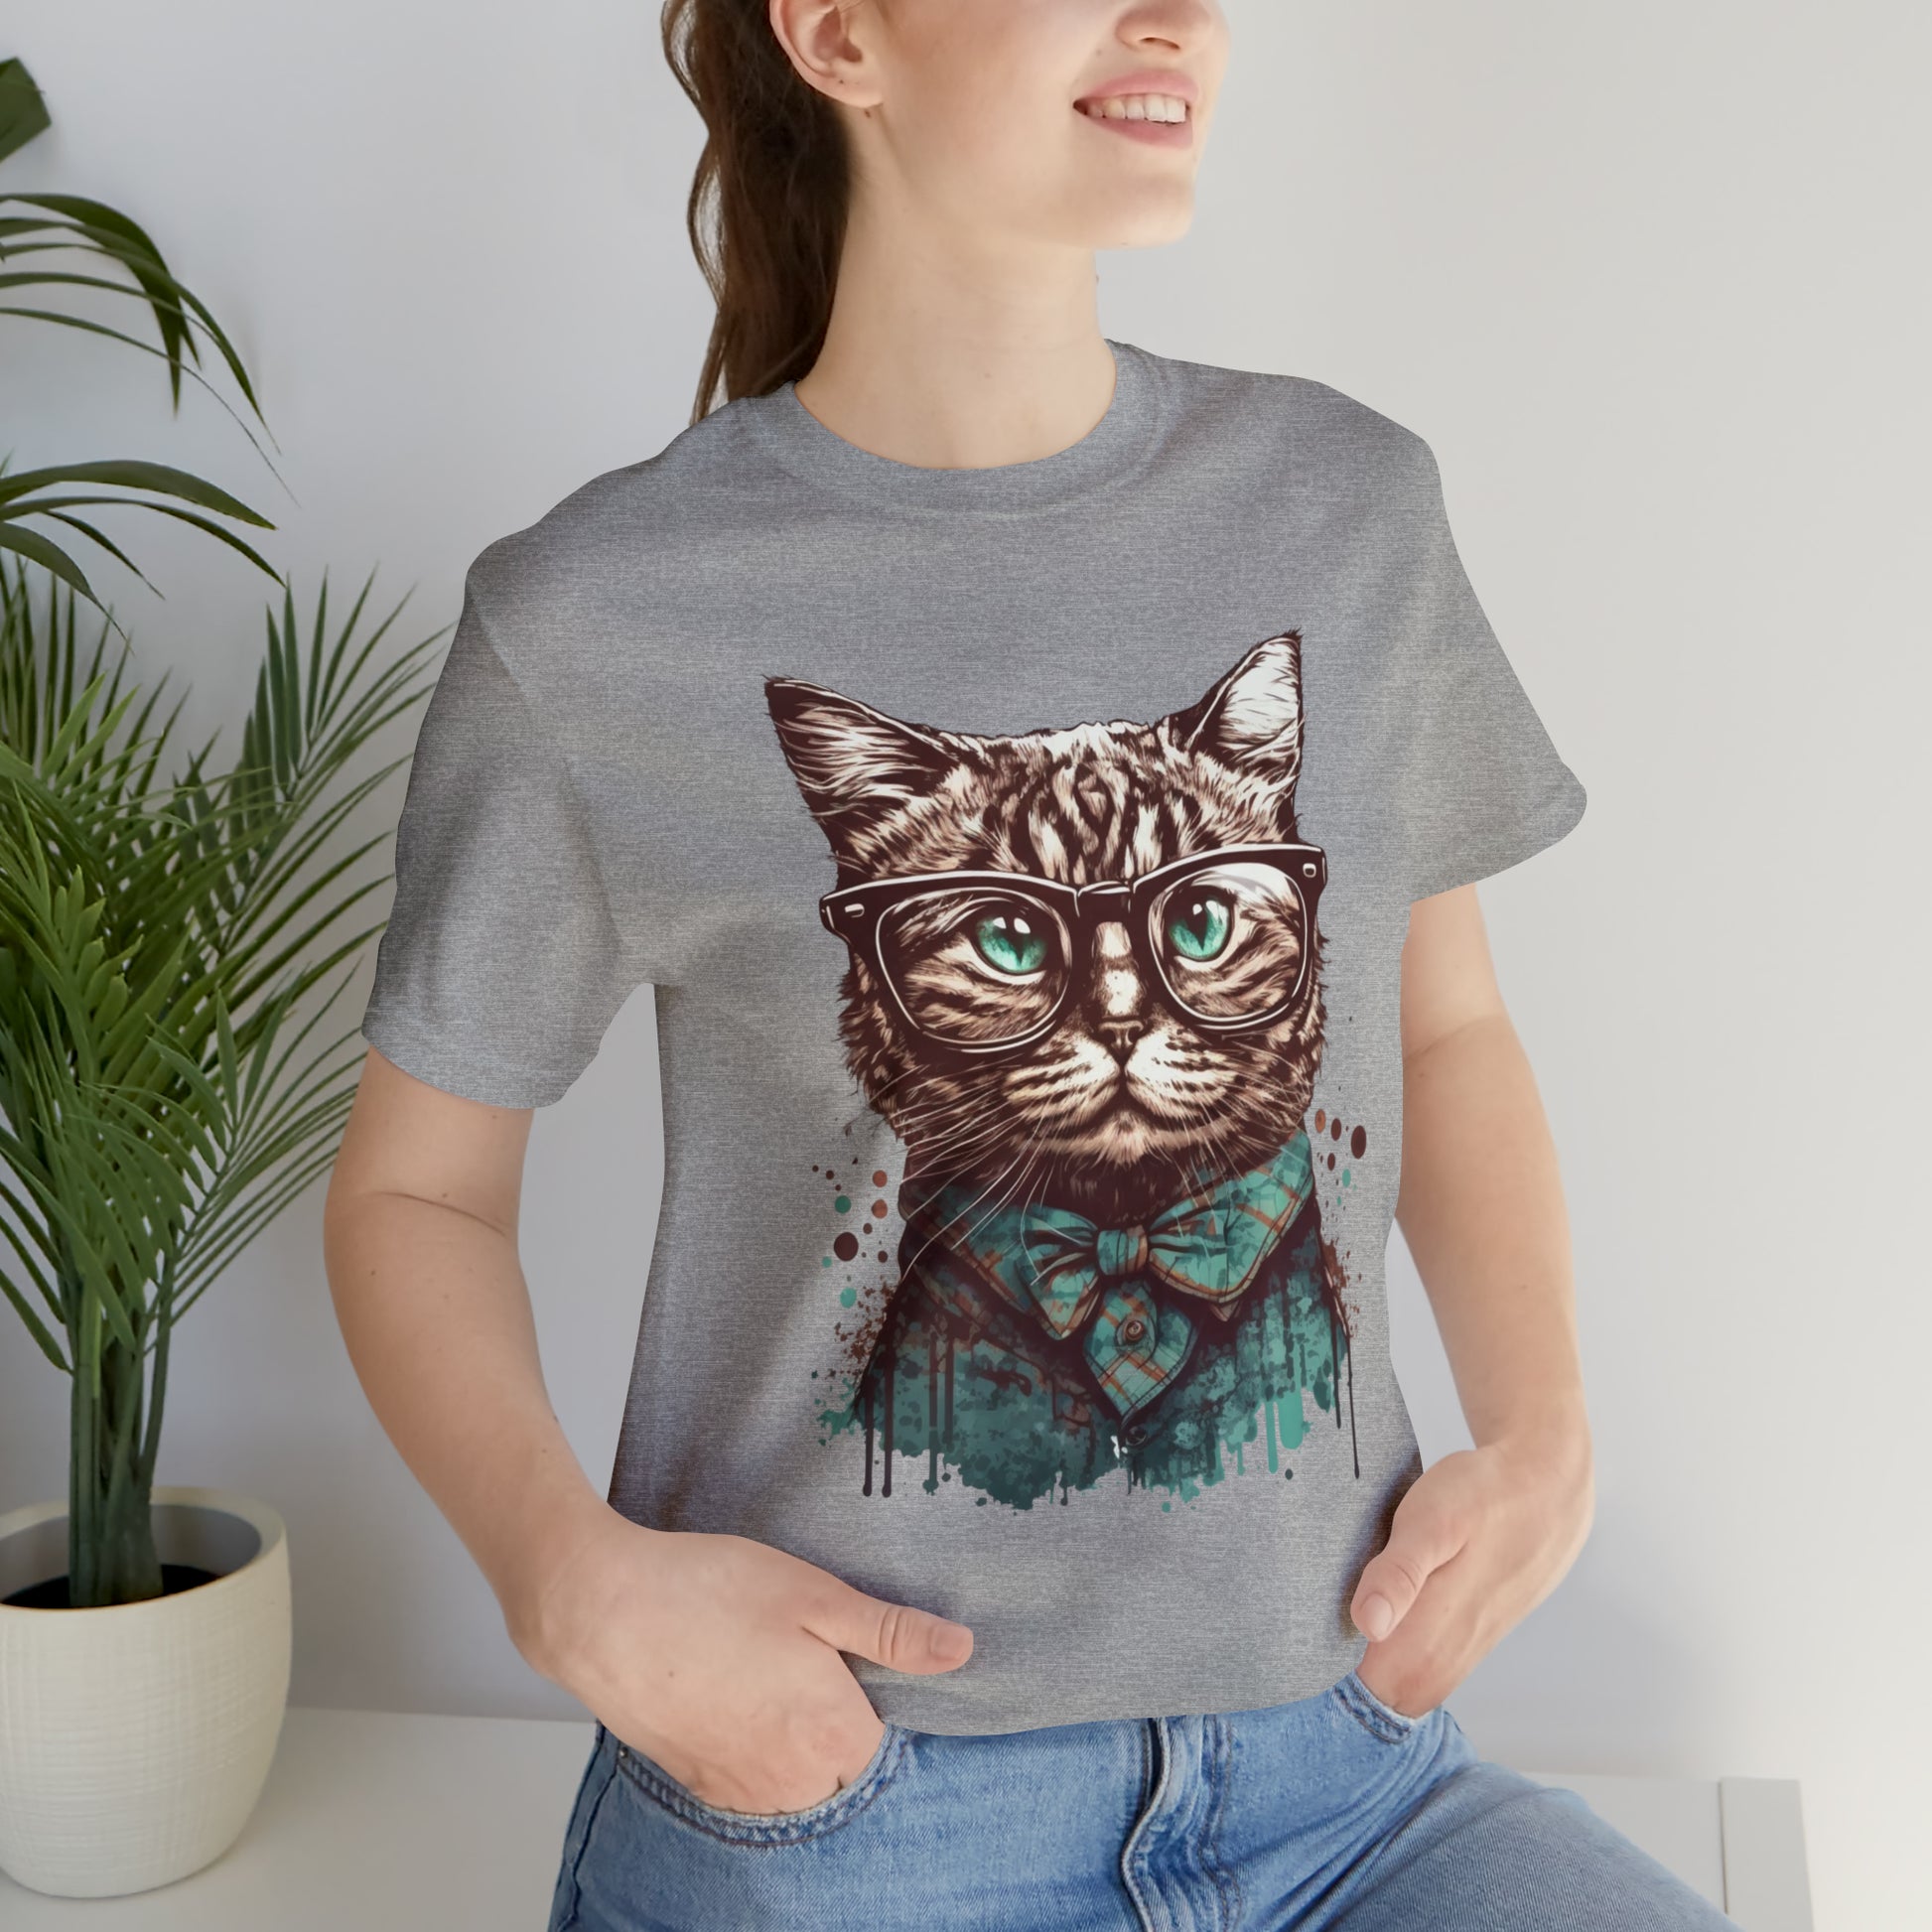 Nerdy cat T-shirt, Cute cat Unisex Jersey Short Sleeve Tee shirt, Geeky cat tshirt, Tabby cat shirt, Cool Cat shirt, gifts for cat lovers